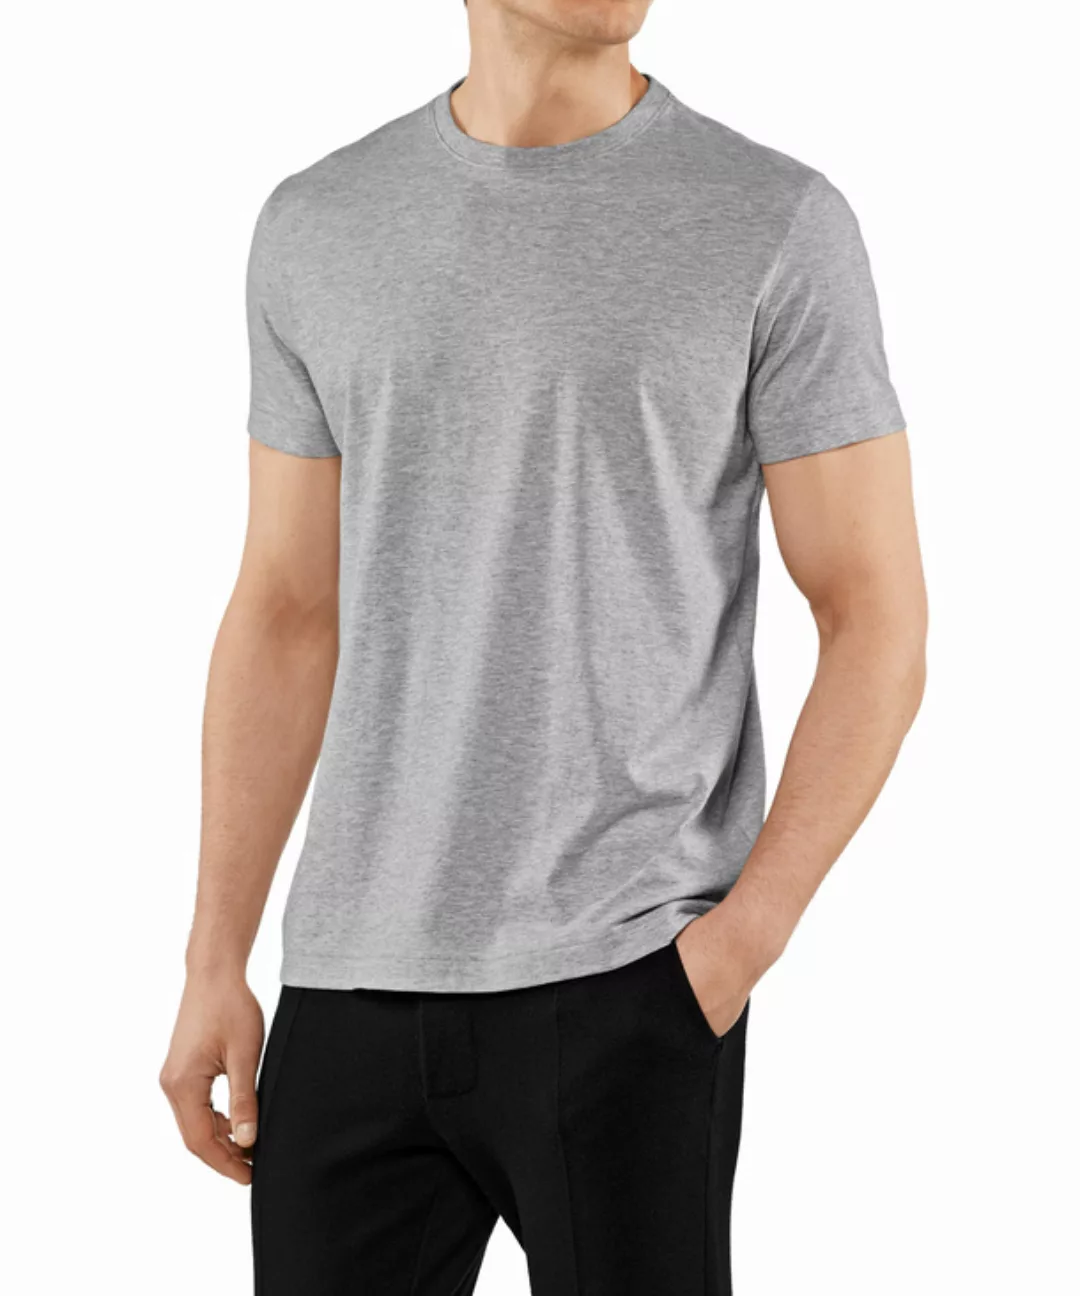 FALKE Herren T-Shirt Rundhals, Polo, S, Grau, Uni,Struktur, Baumwolle, 6210 günstig online kaufen